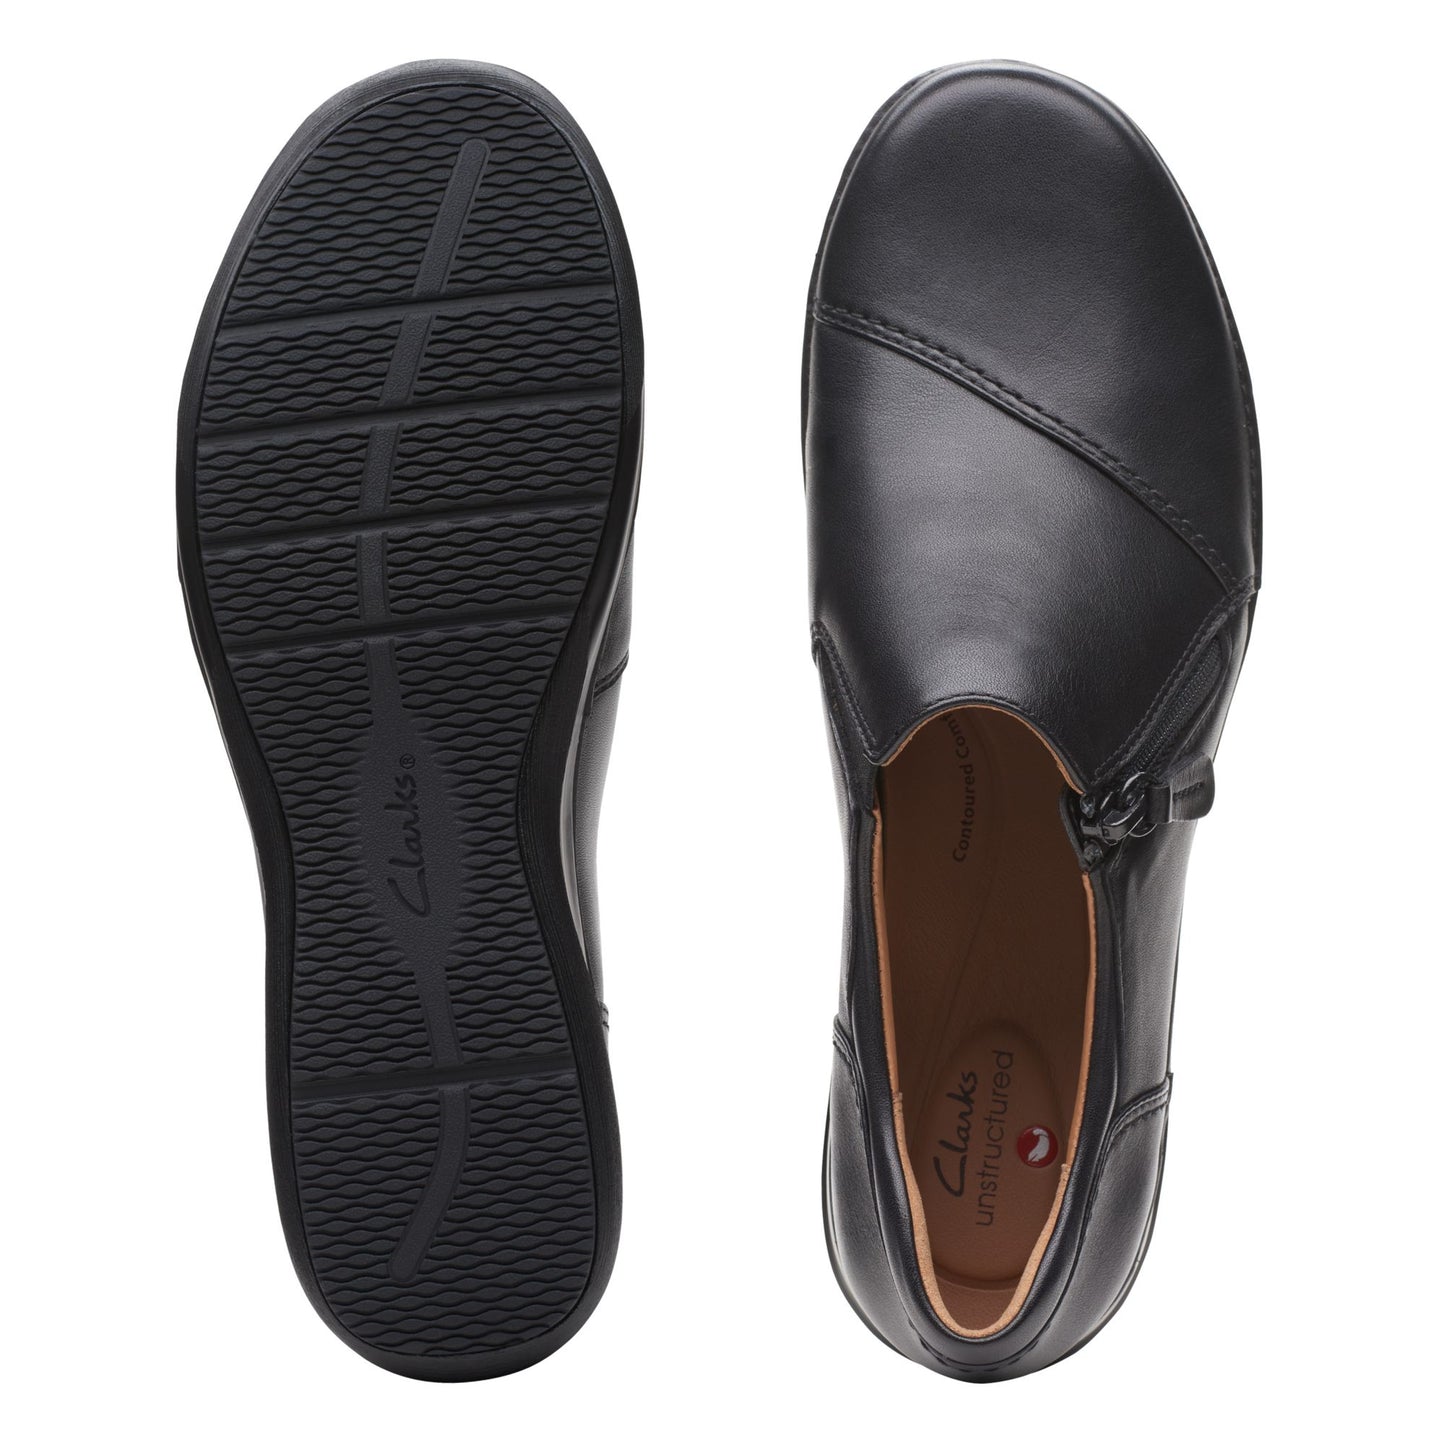 Zapatos Sin Cordones On Shoes De La Marca Clarks Para Mujer Modelo Appley Zip Black Leather En Color Negro